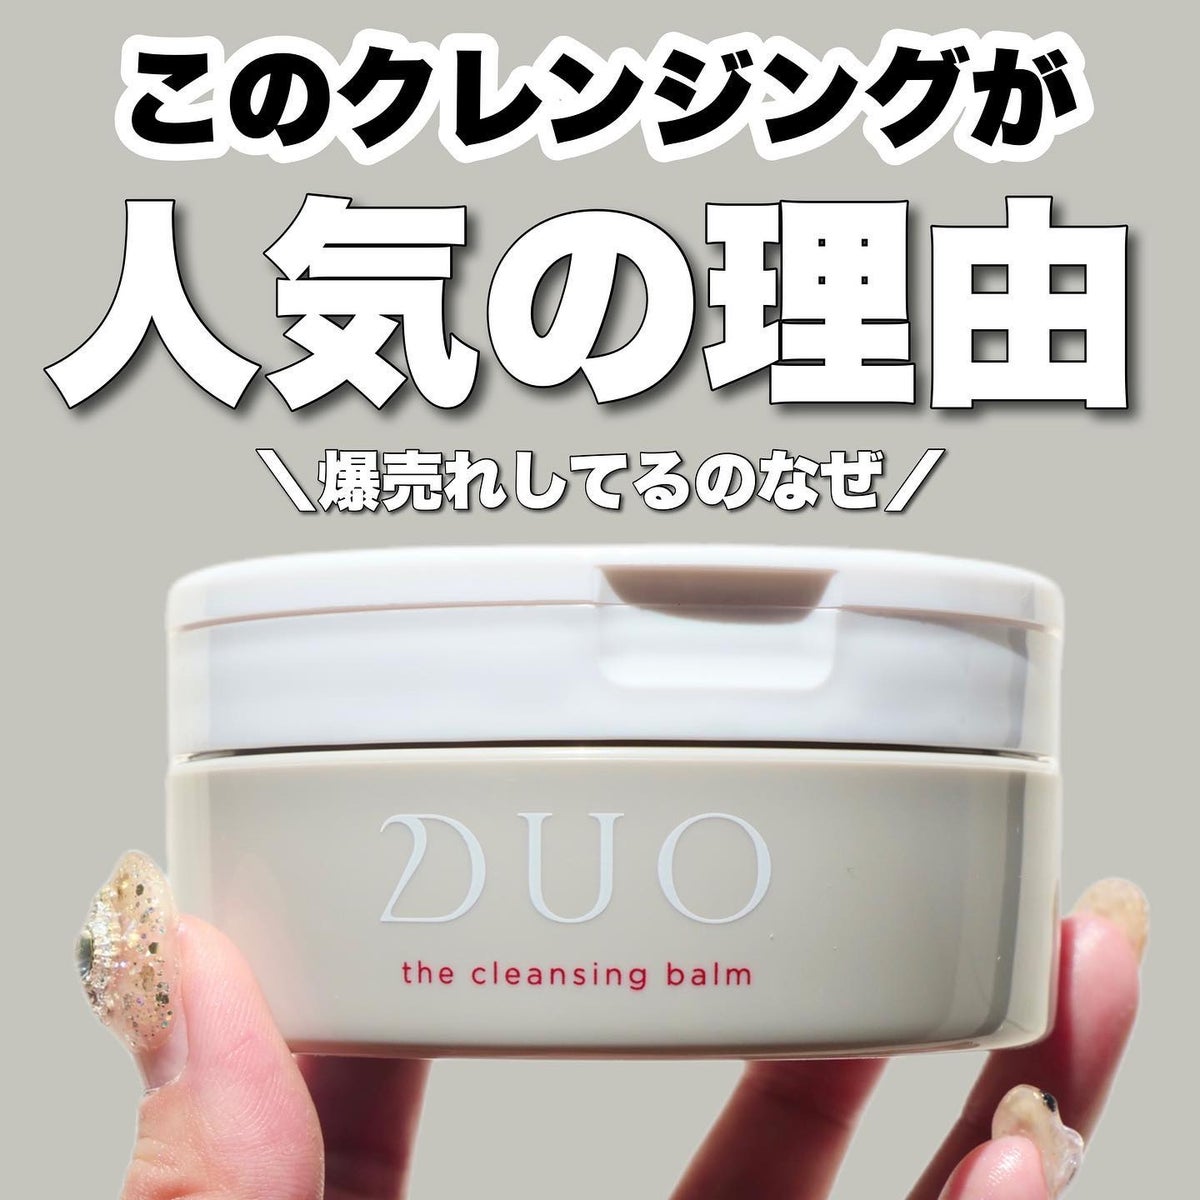 大人気 DUO デュオザクレンジングバームホットa 限定増量100g 洗顔